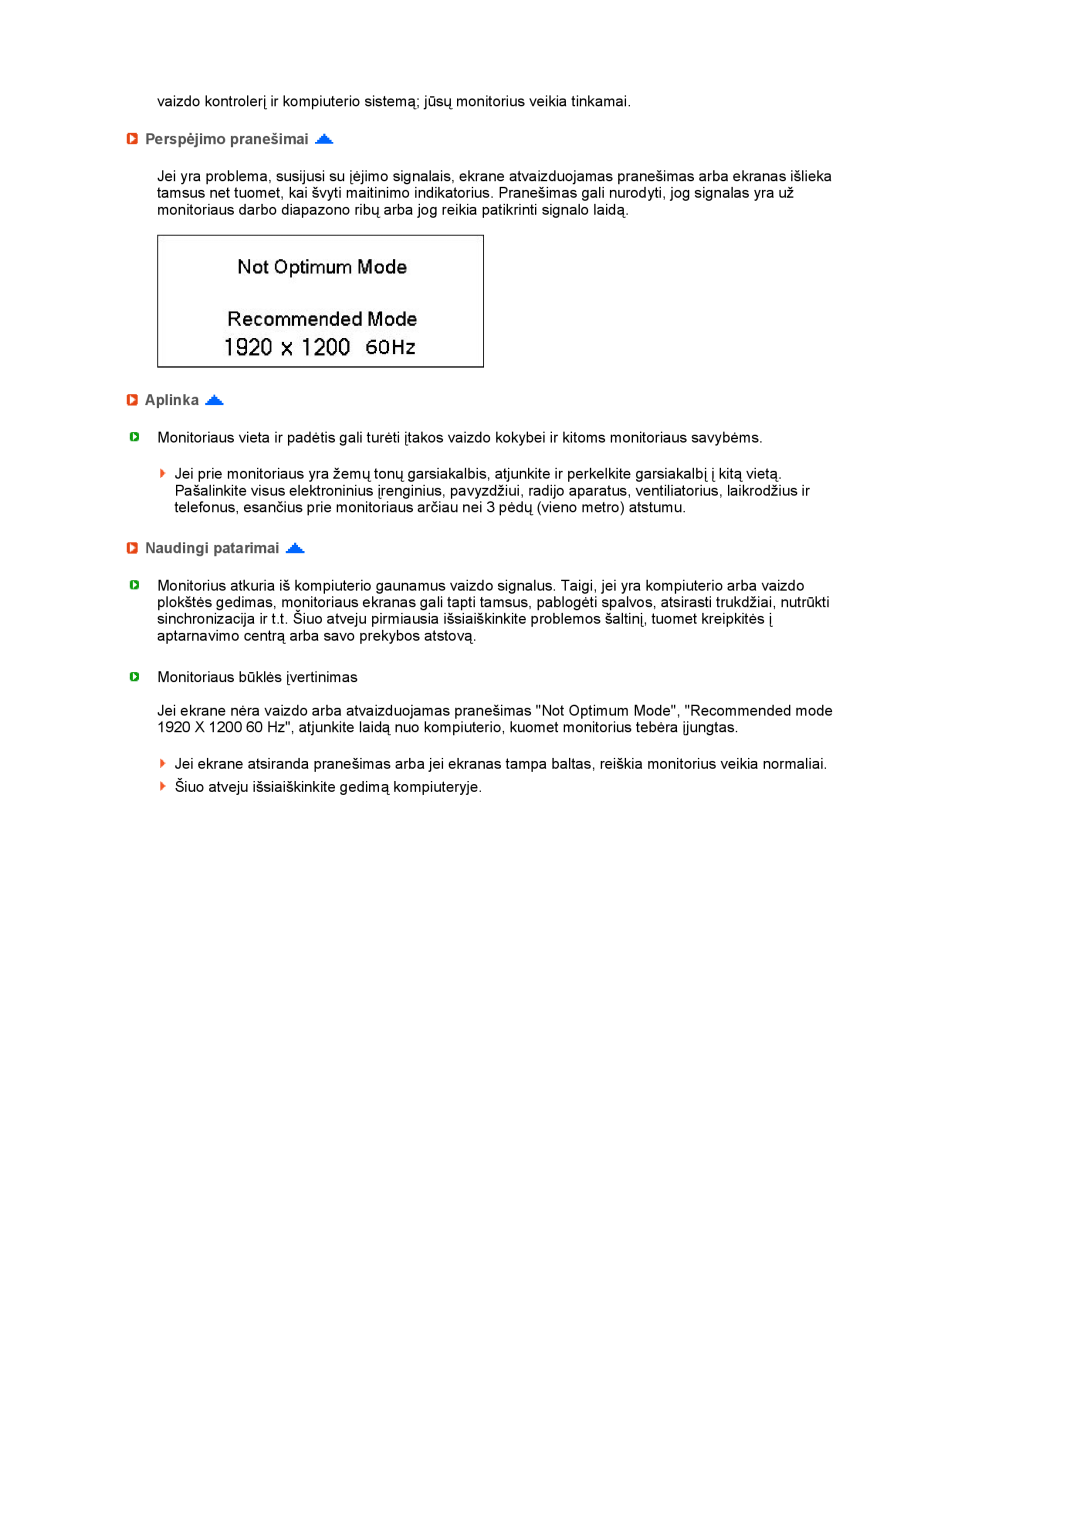 Samsung LS27HUBCB/EDC manual Perspėjimo pranešimai, Aplinka, Naudingi patarimai 